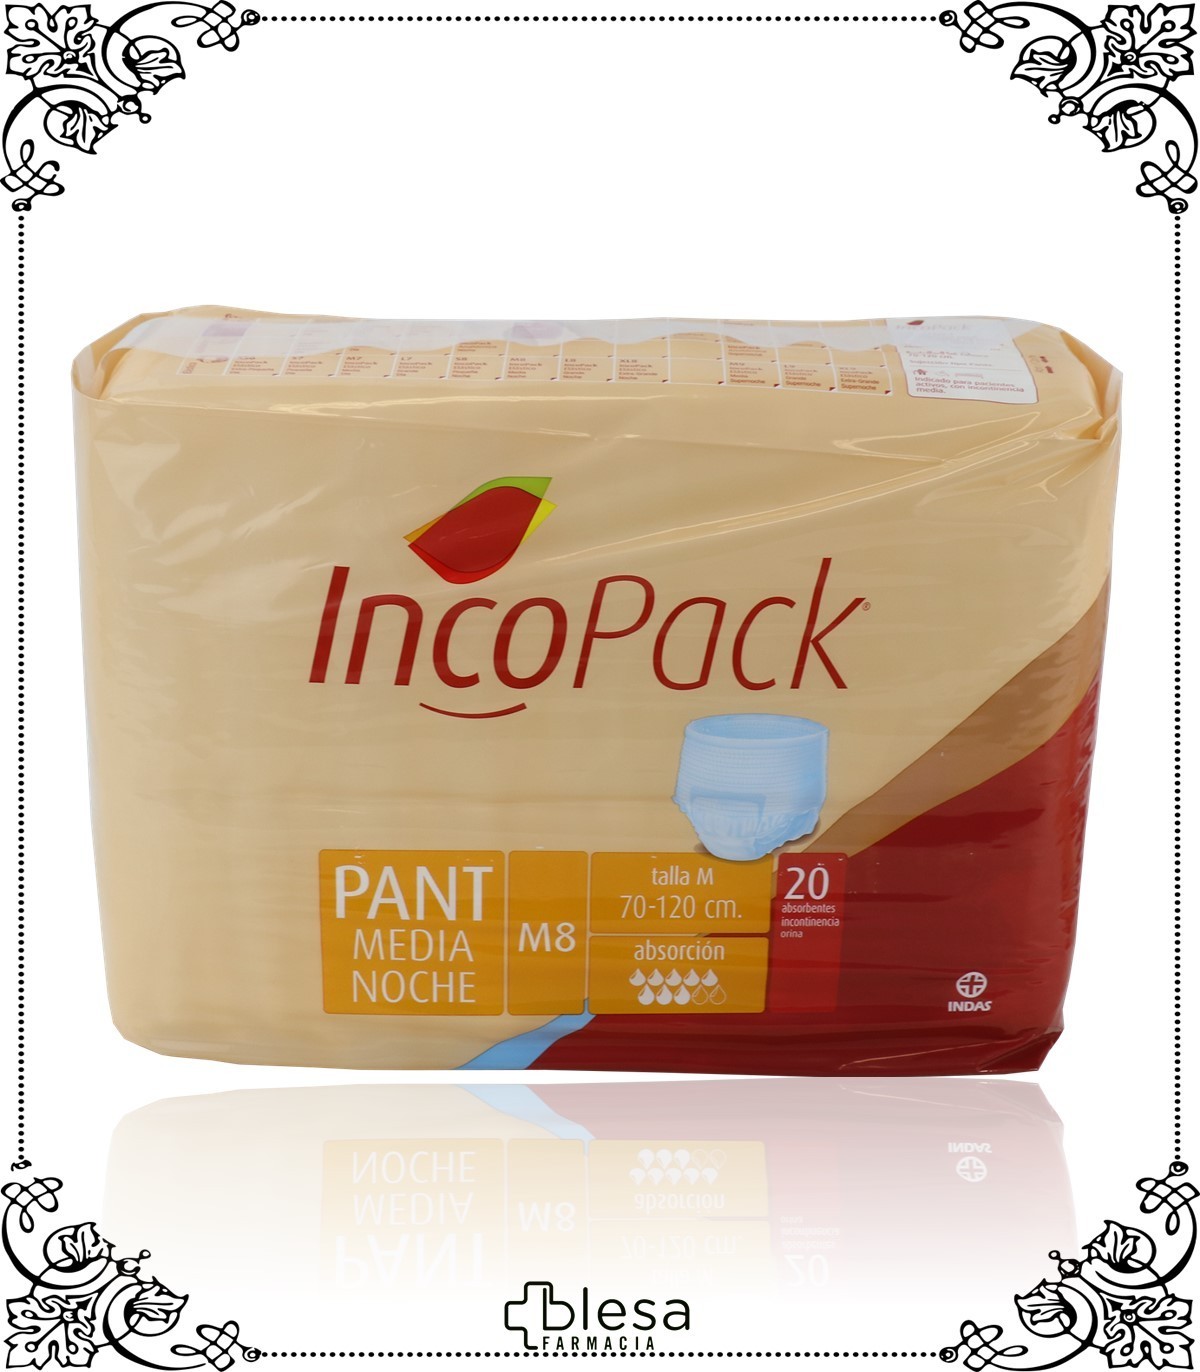 Tipos de absorbentes para incontinencia urinaria